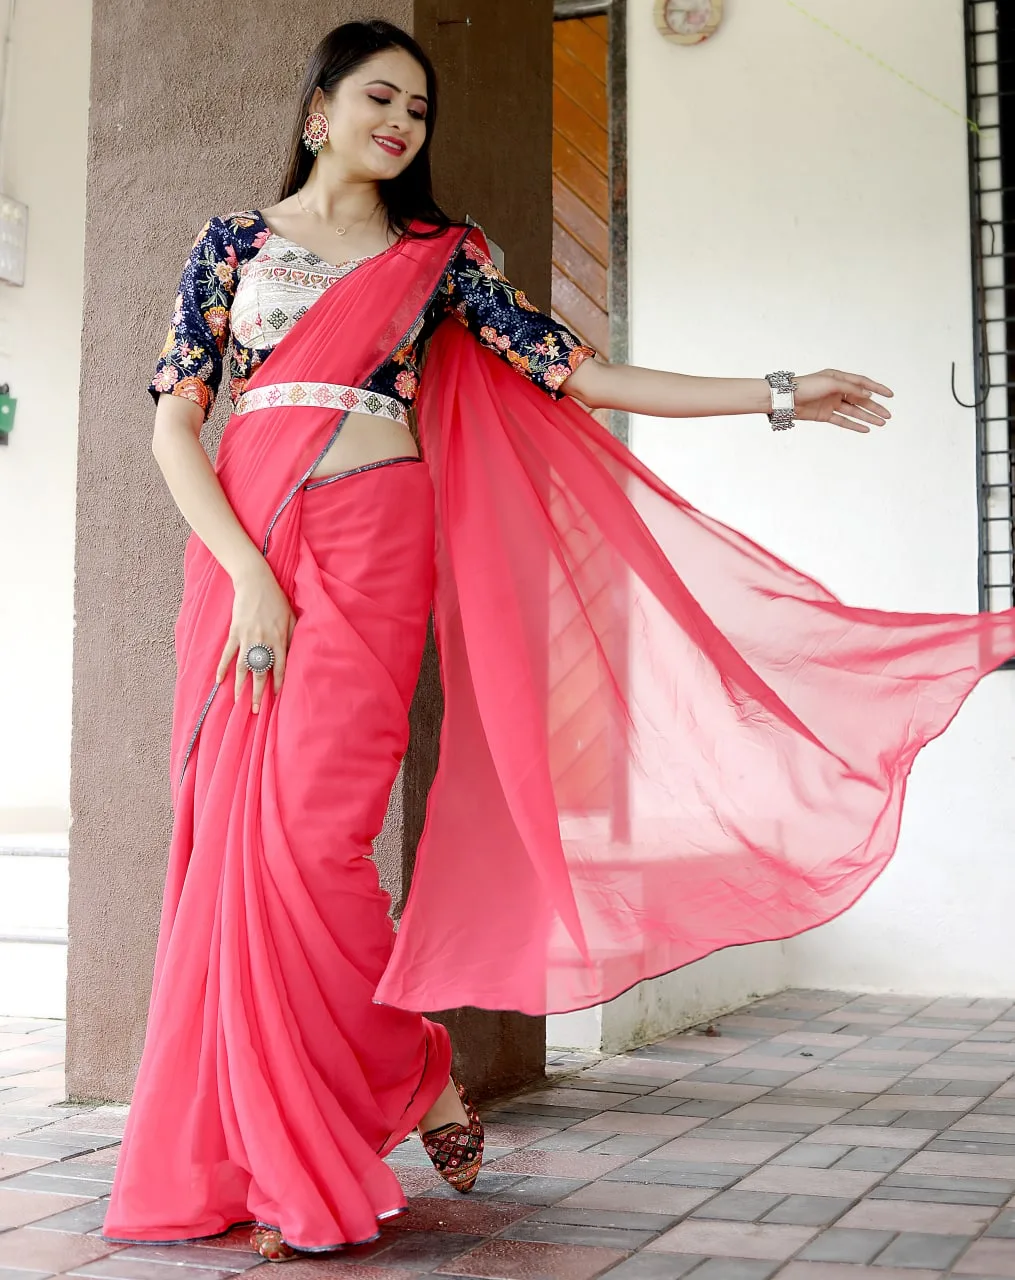 Aggregate 206+ pink saree matching suit latest